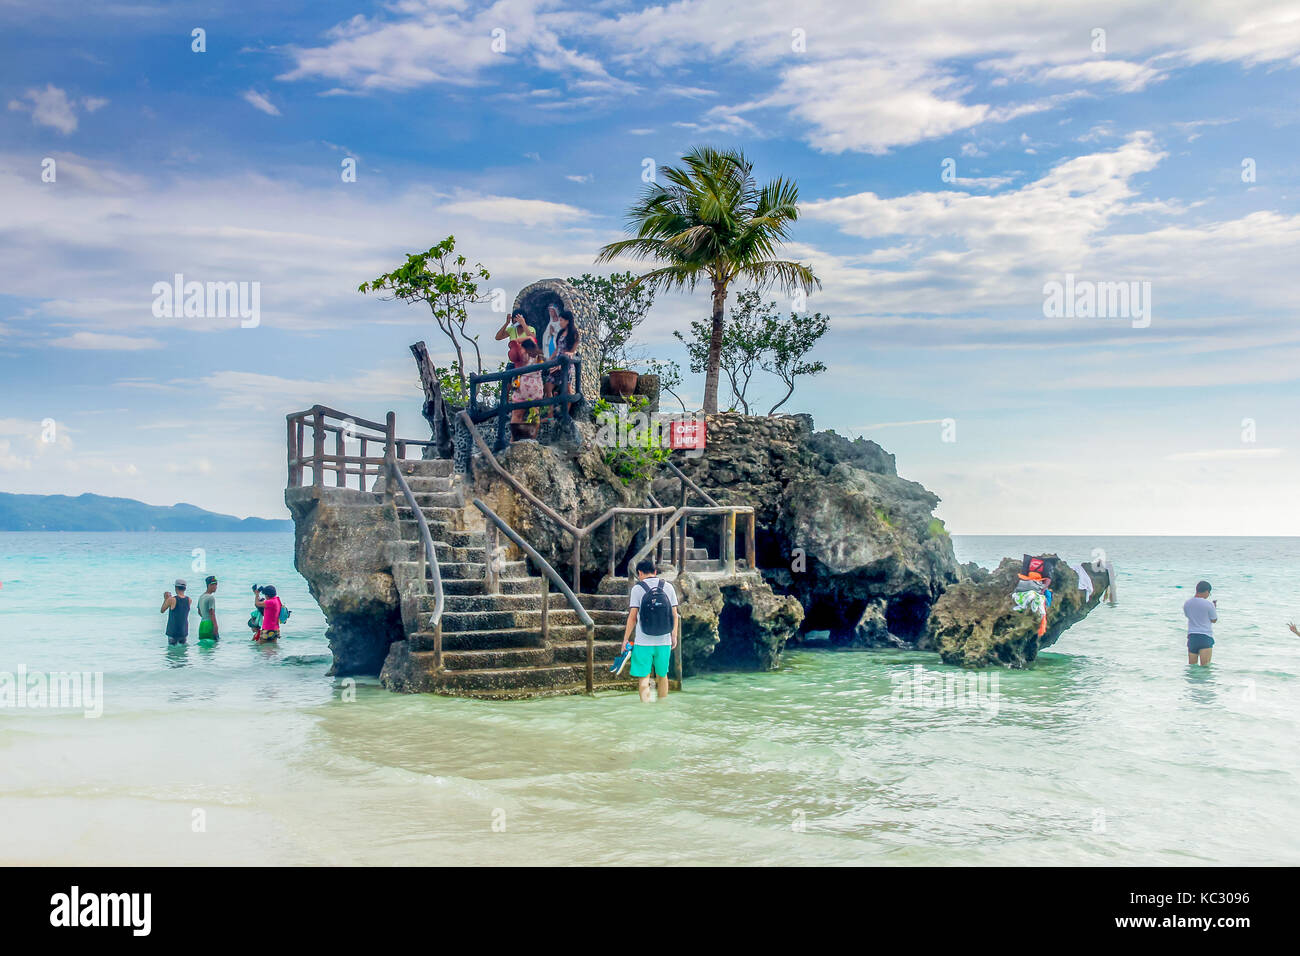 Boracay, Philippinen - 16 Sep 2015: willys Rock, an der berühmten weißen Strand gelegen, ist eines der bekanntesten Wahrzeichen der Insel Boracay, Phil Stockfoto